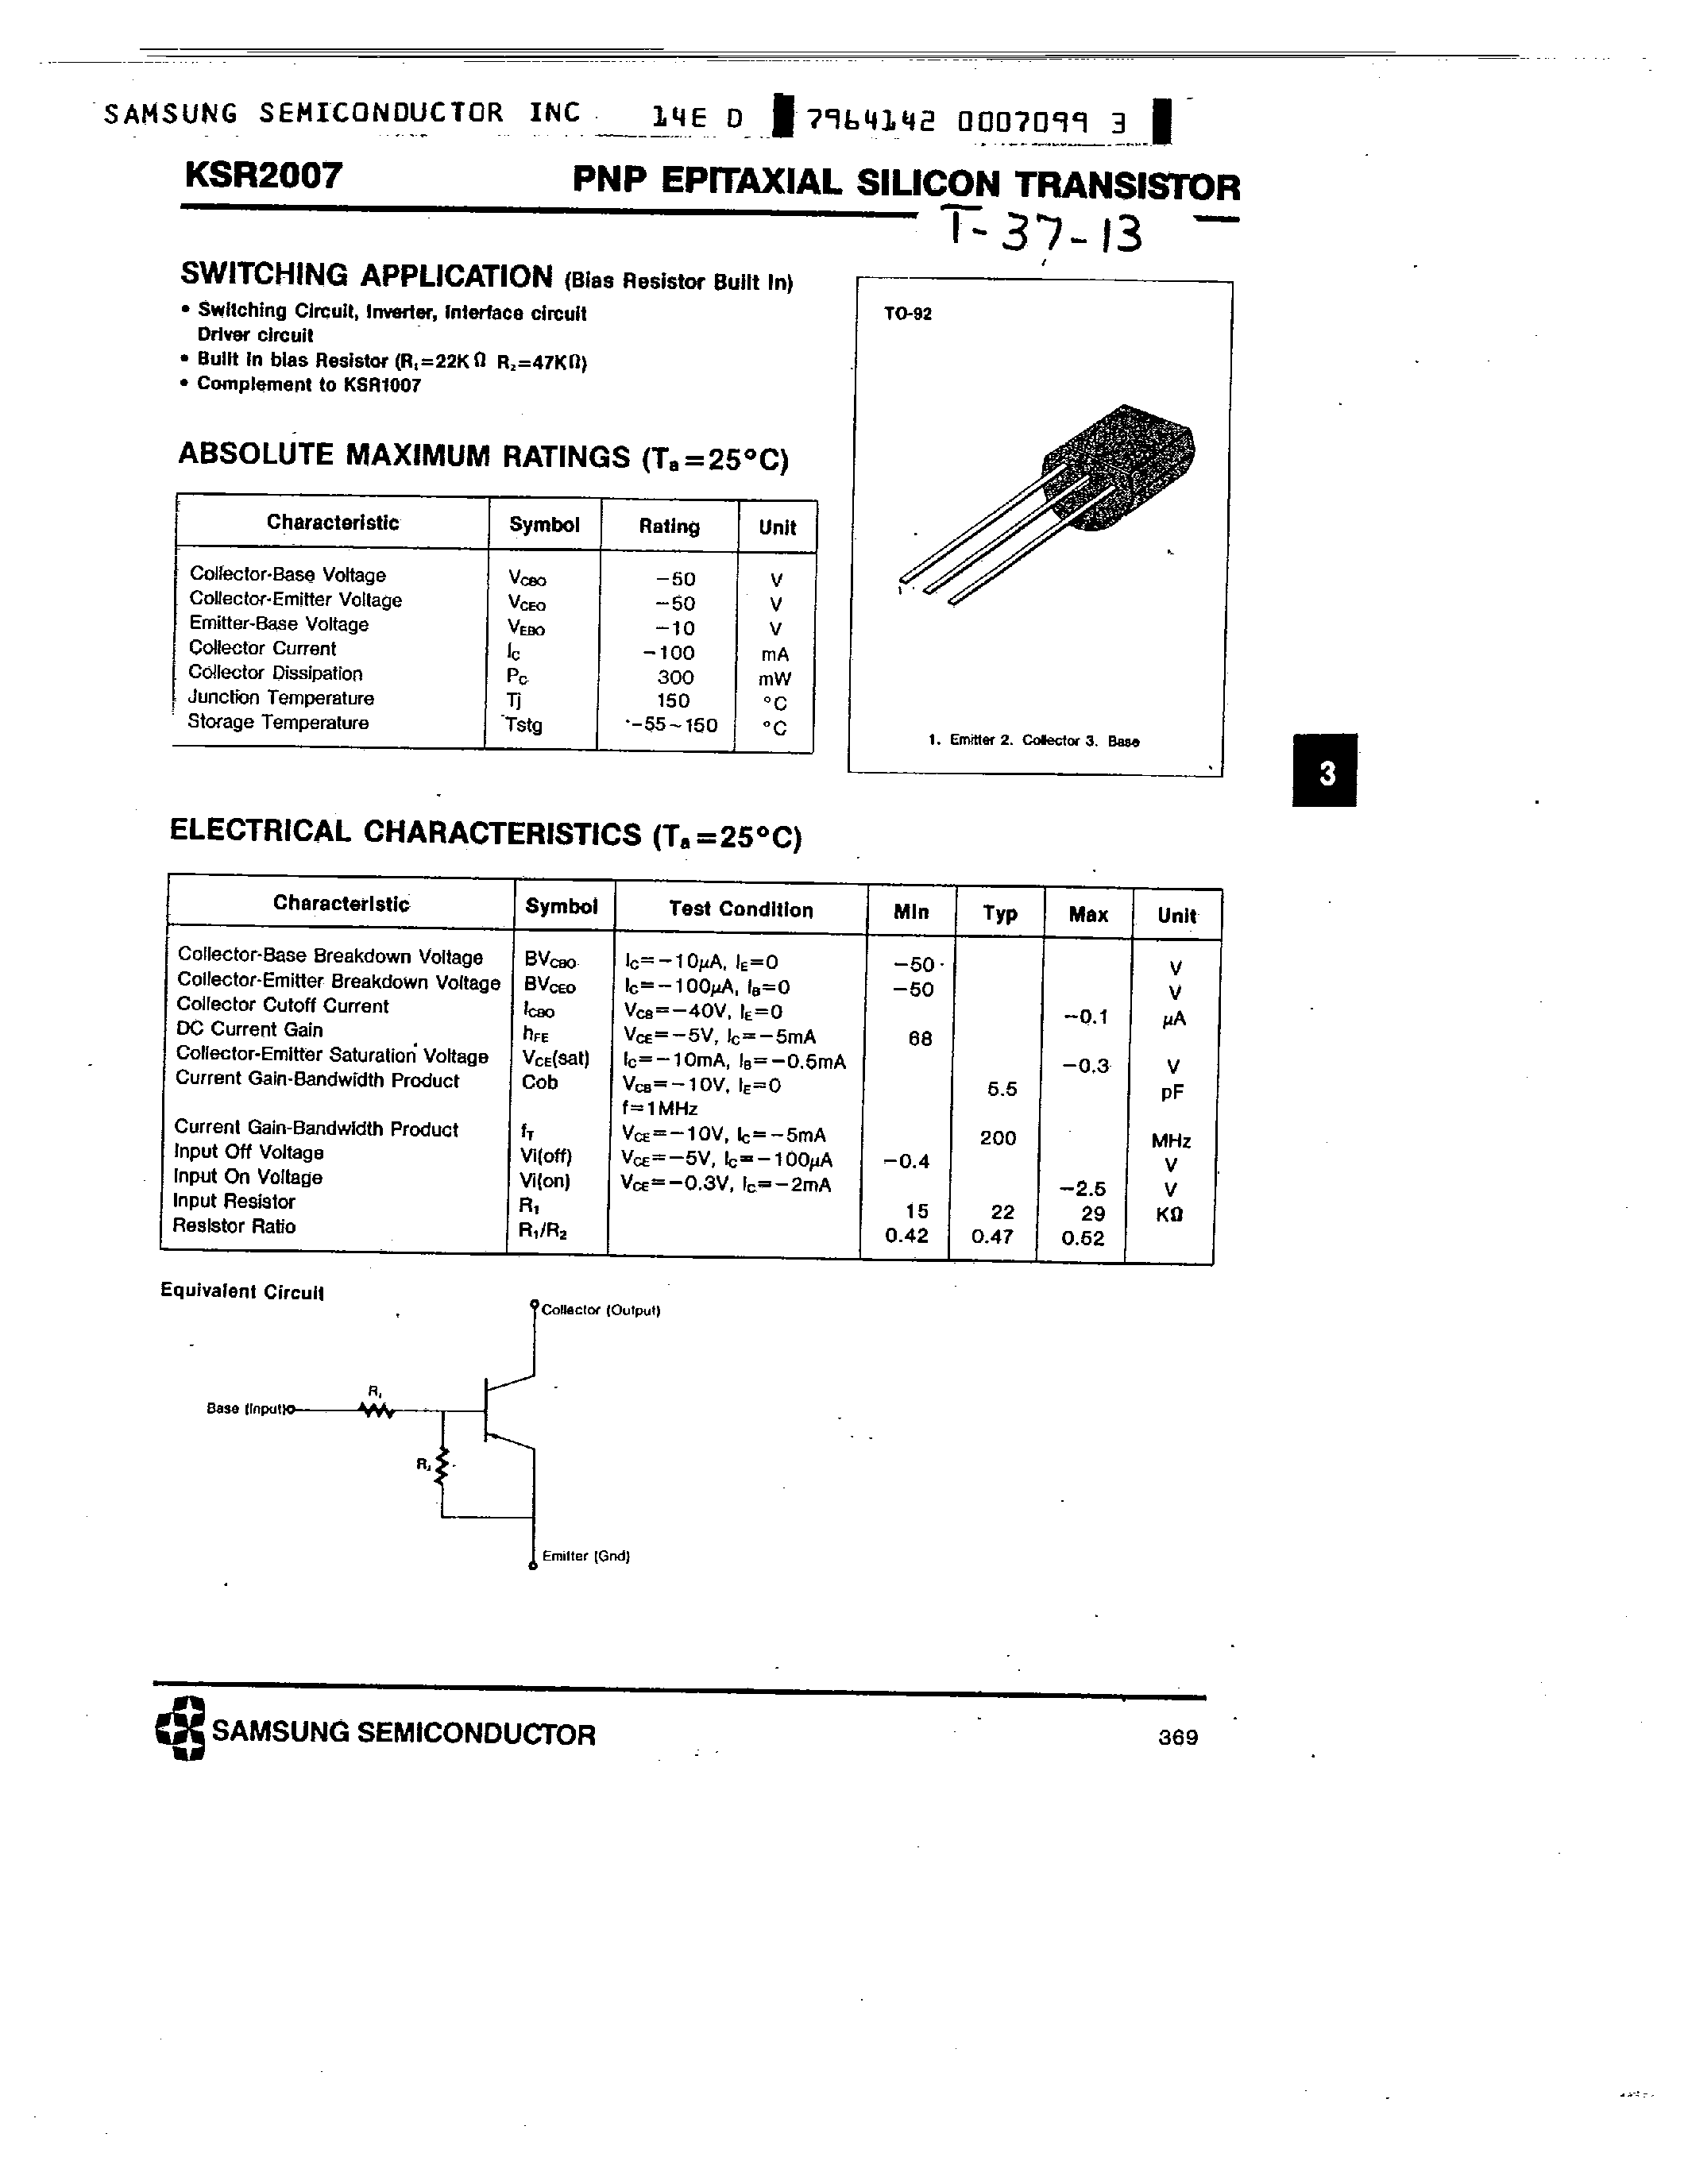 Datasheet KSR2007 - PNP (SWITCHING APPLICATION) page 1